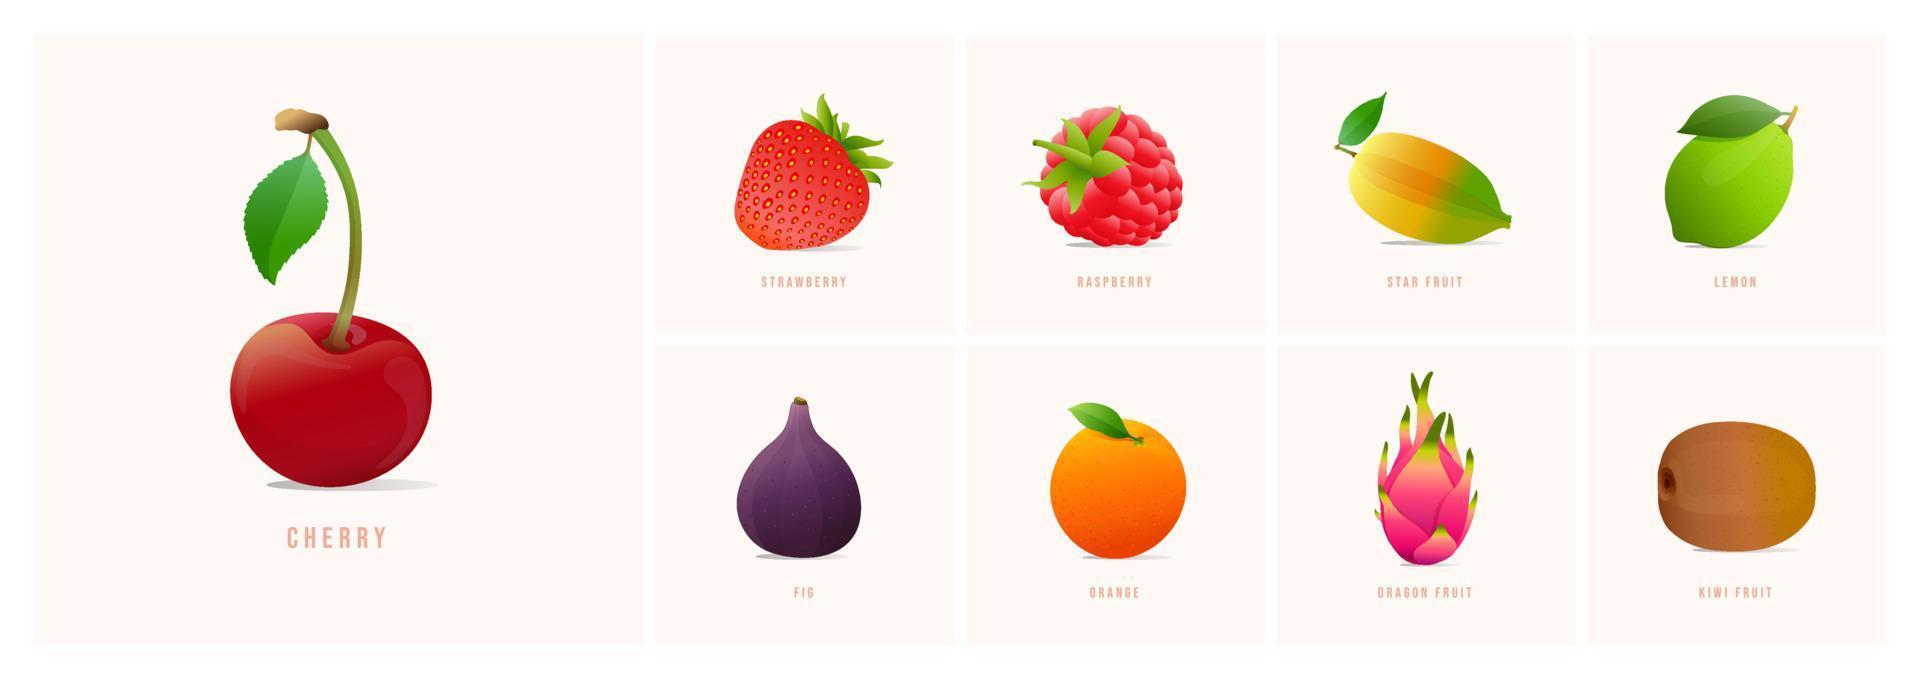 uppsättning av frukter, modern stil vektor illustrationer. körsbär, jordgubbe, stjärna frukt, citron, fikon, orange, drake frukt, kiwi